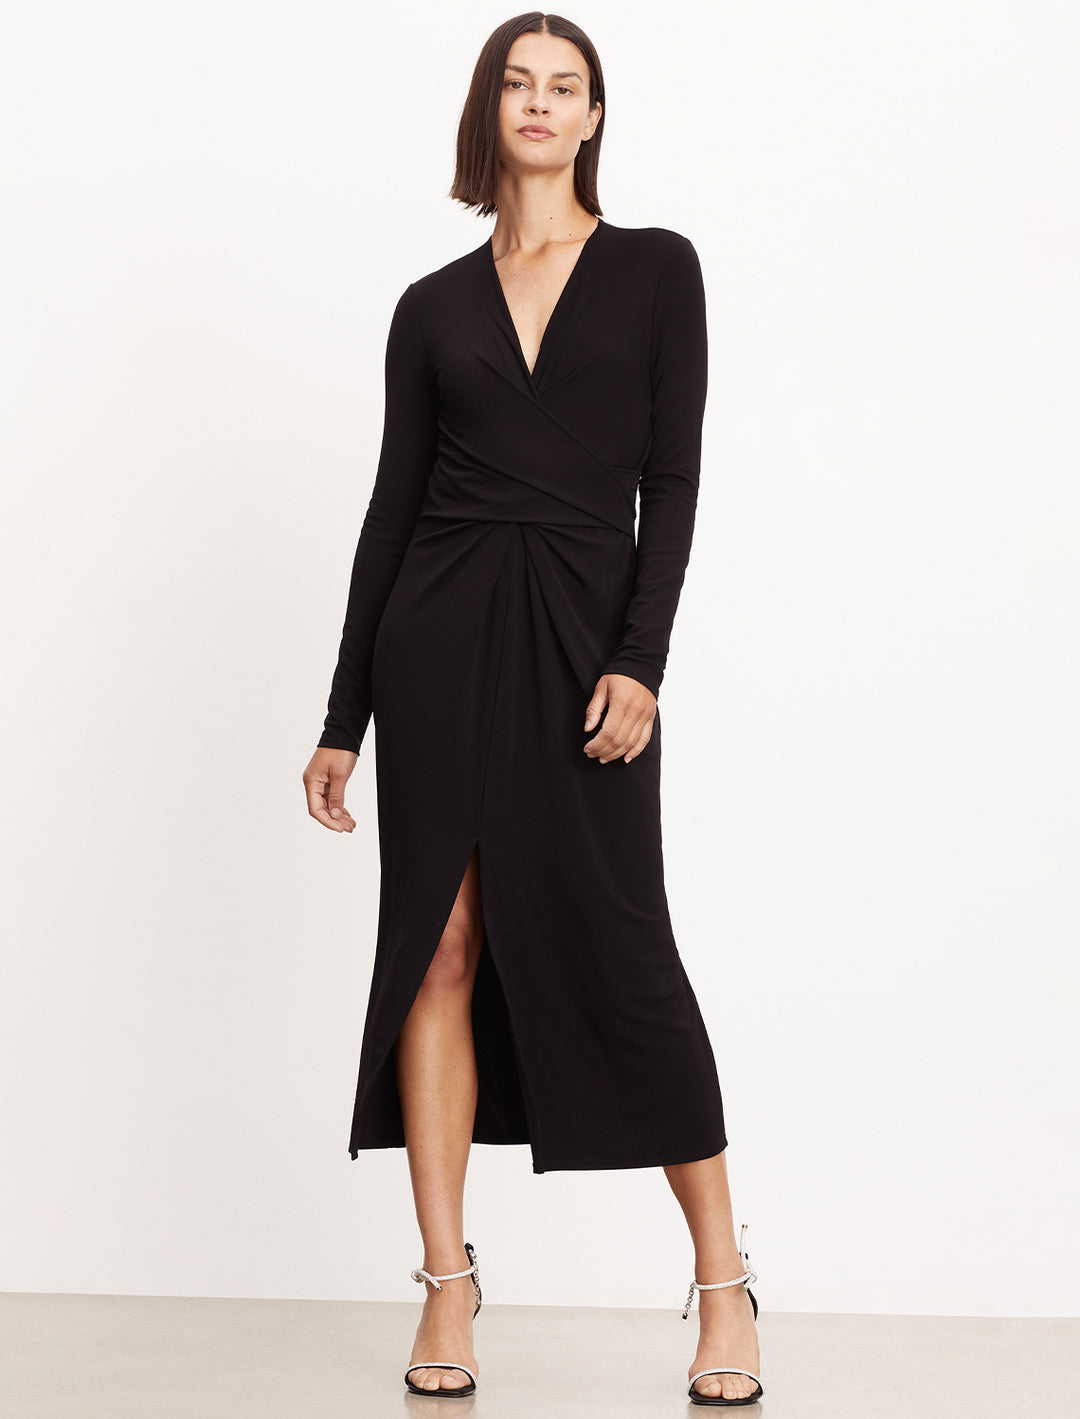 Model wearing Velvet by Graham & Spencer's Eliana Dress in Black Matte Jersey.